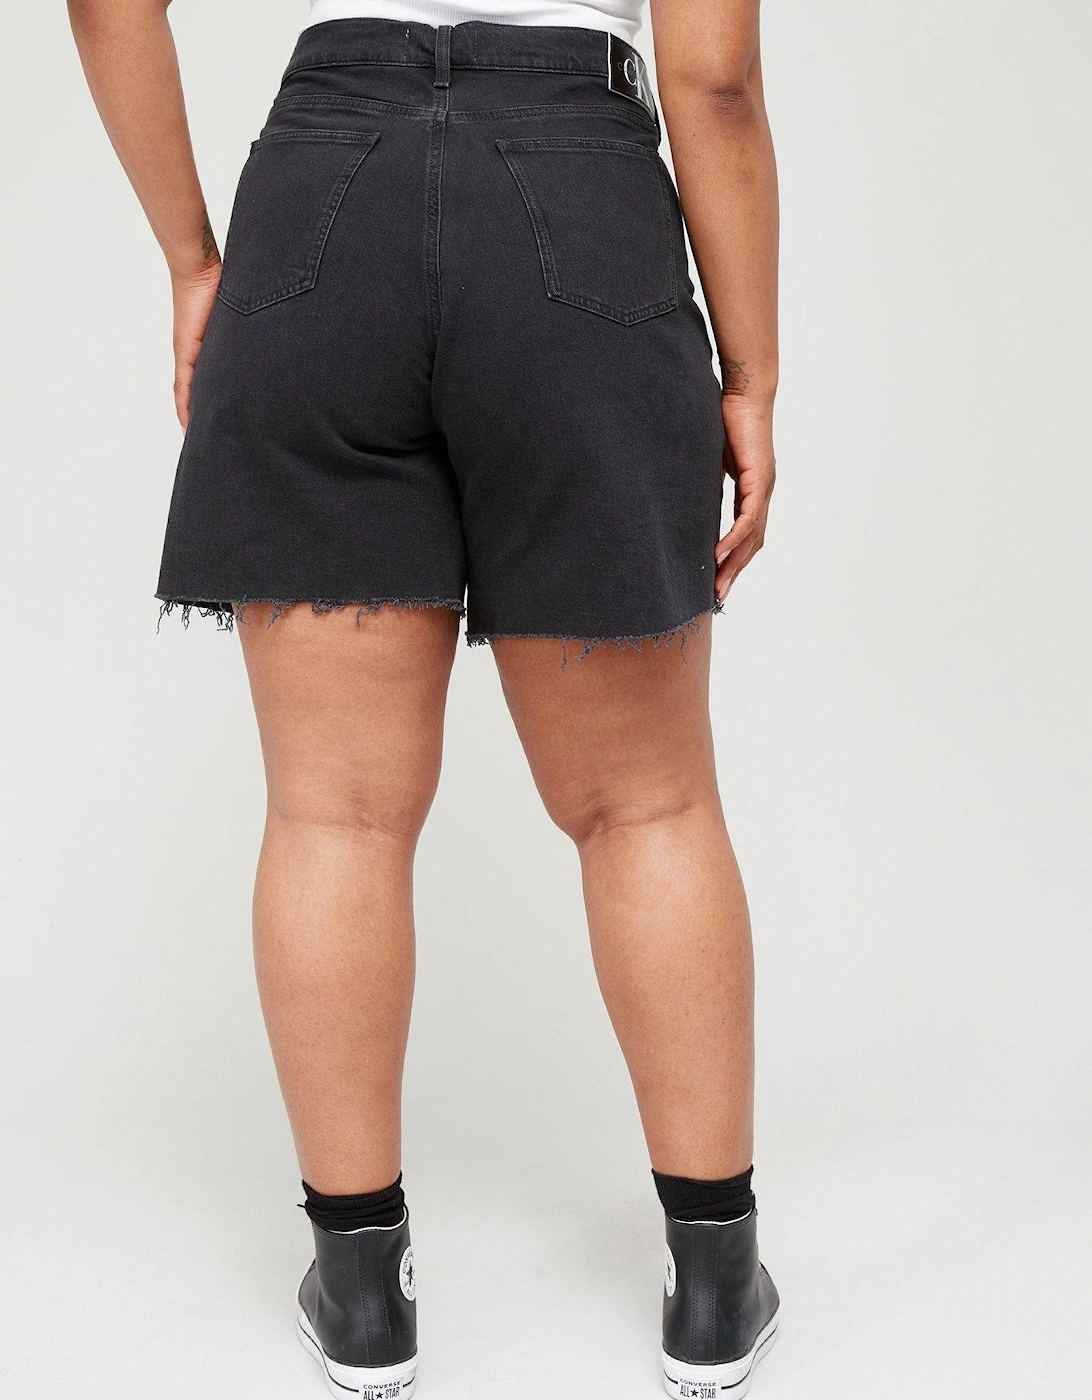 Plus Bermuda Mom Shorts - Black